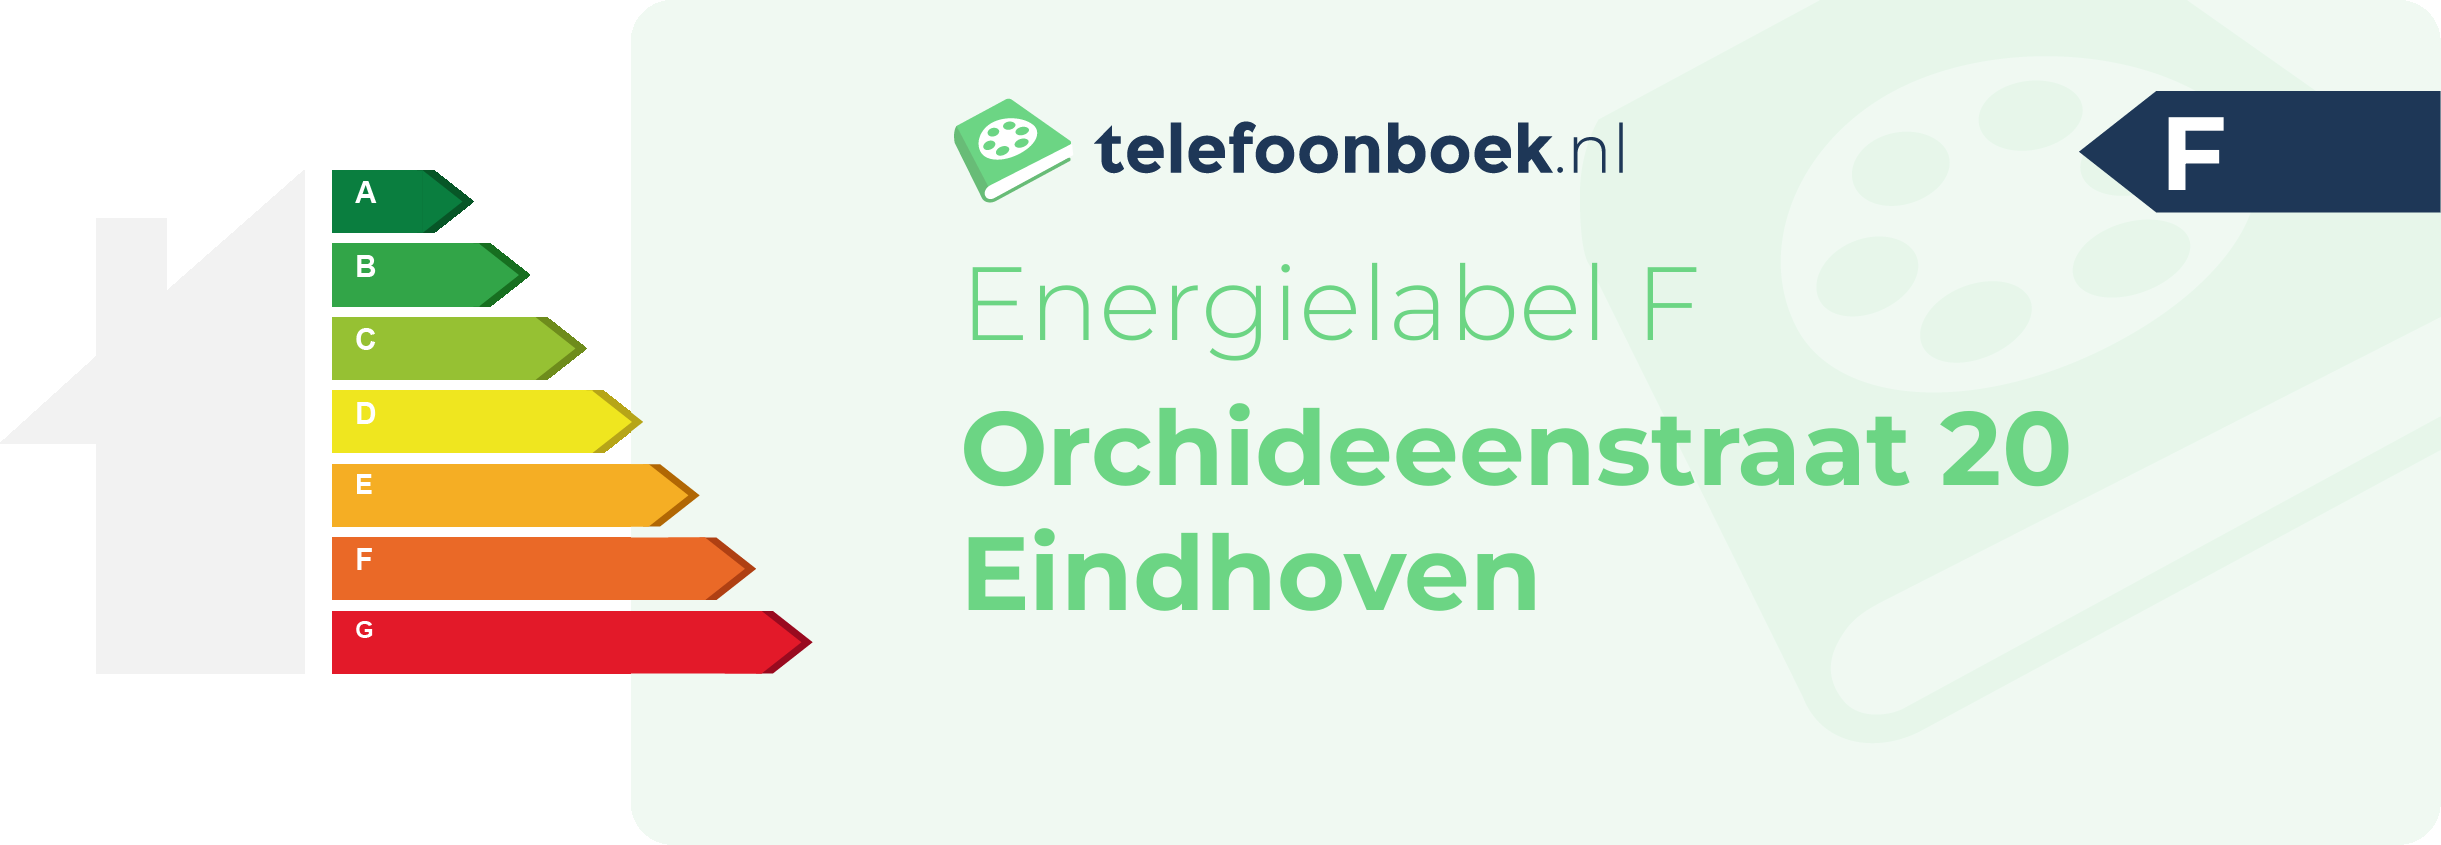 Energielabel Orchideeenstraat 20 Eindhoven